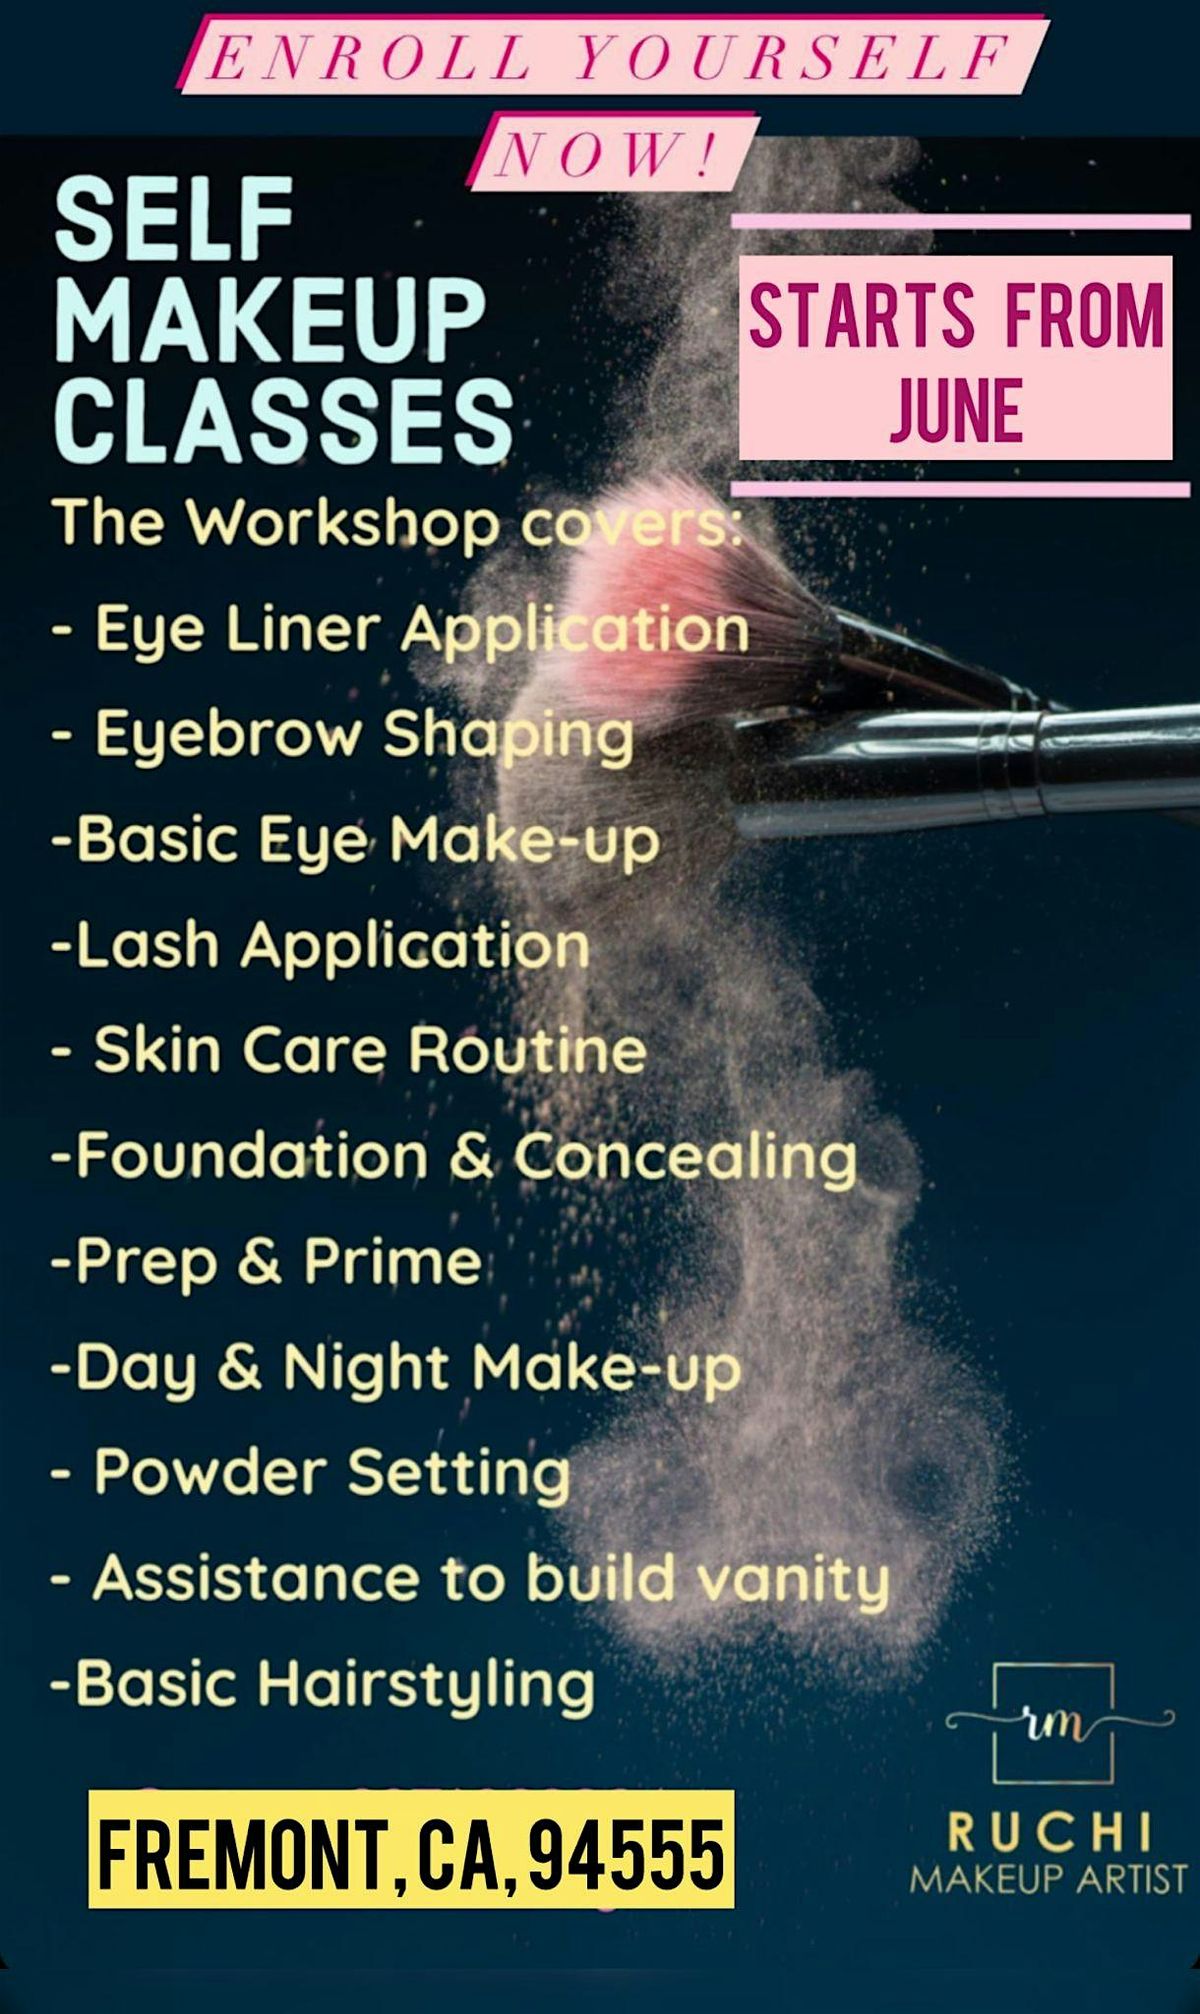 Makeup Classes